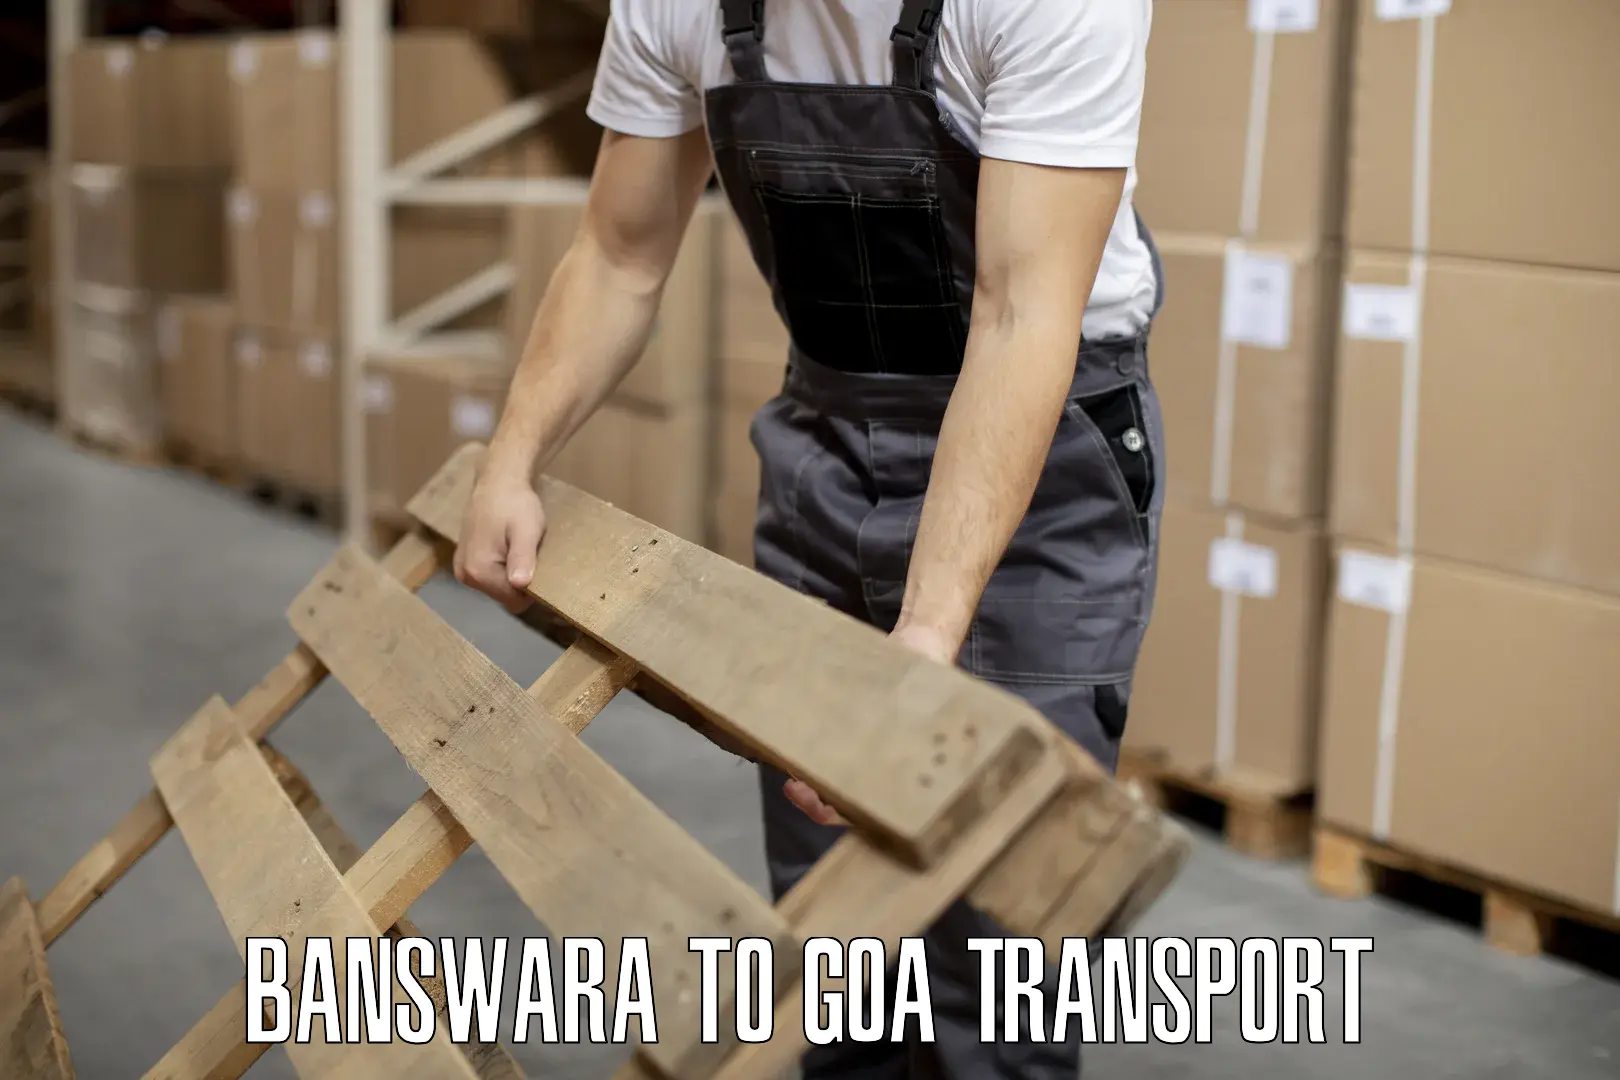 Interstate transport services Banswara to Panjim